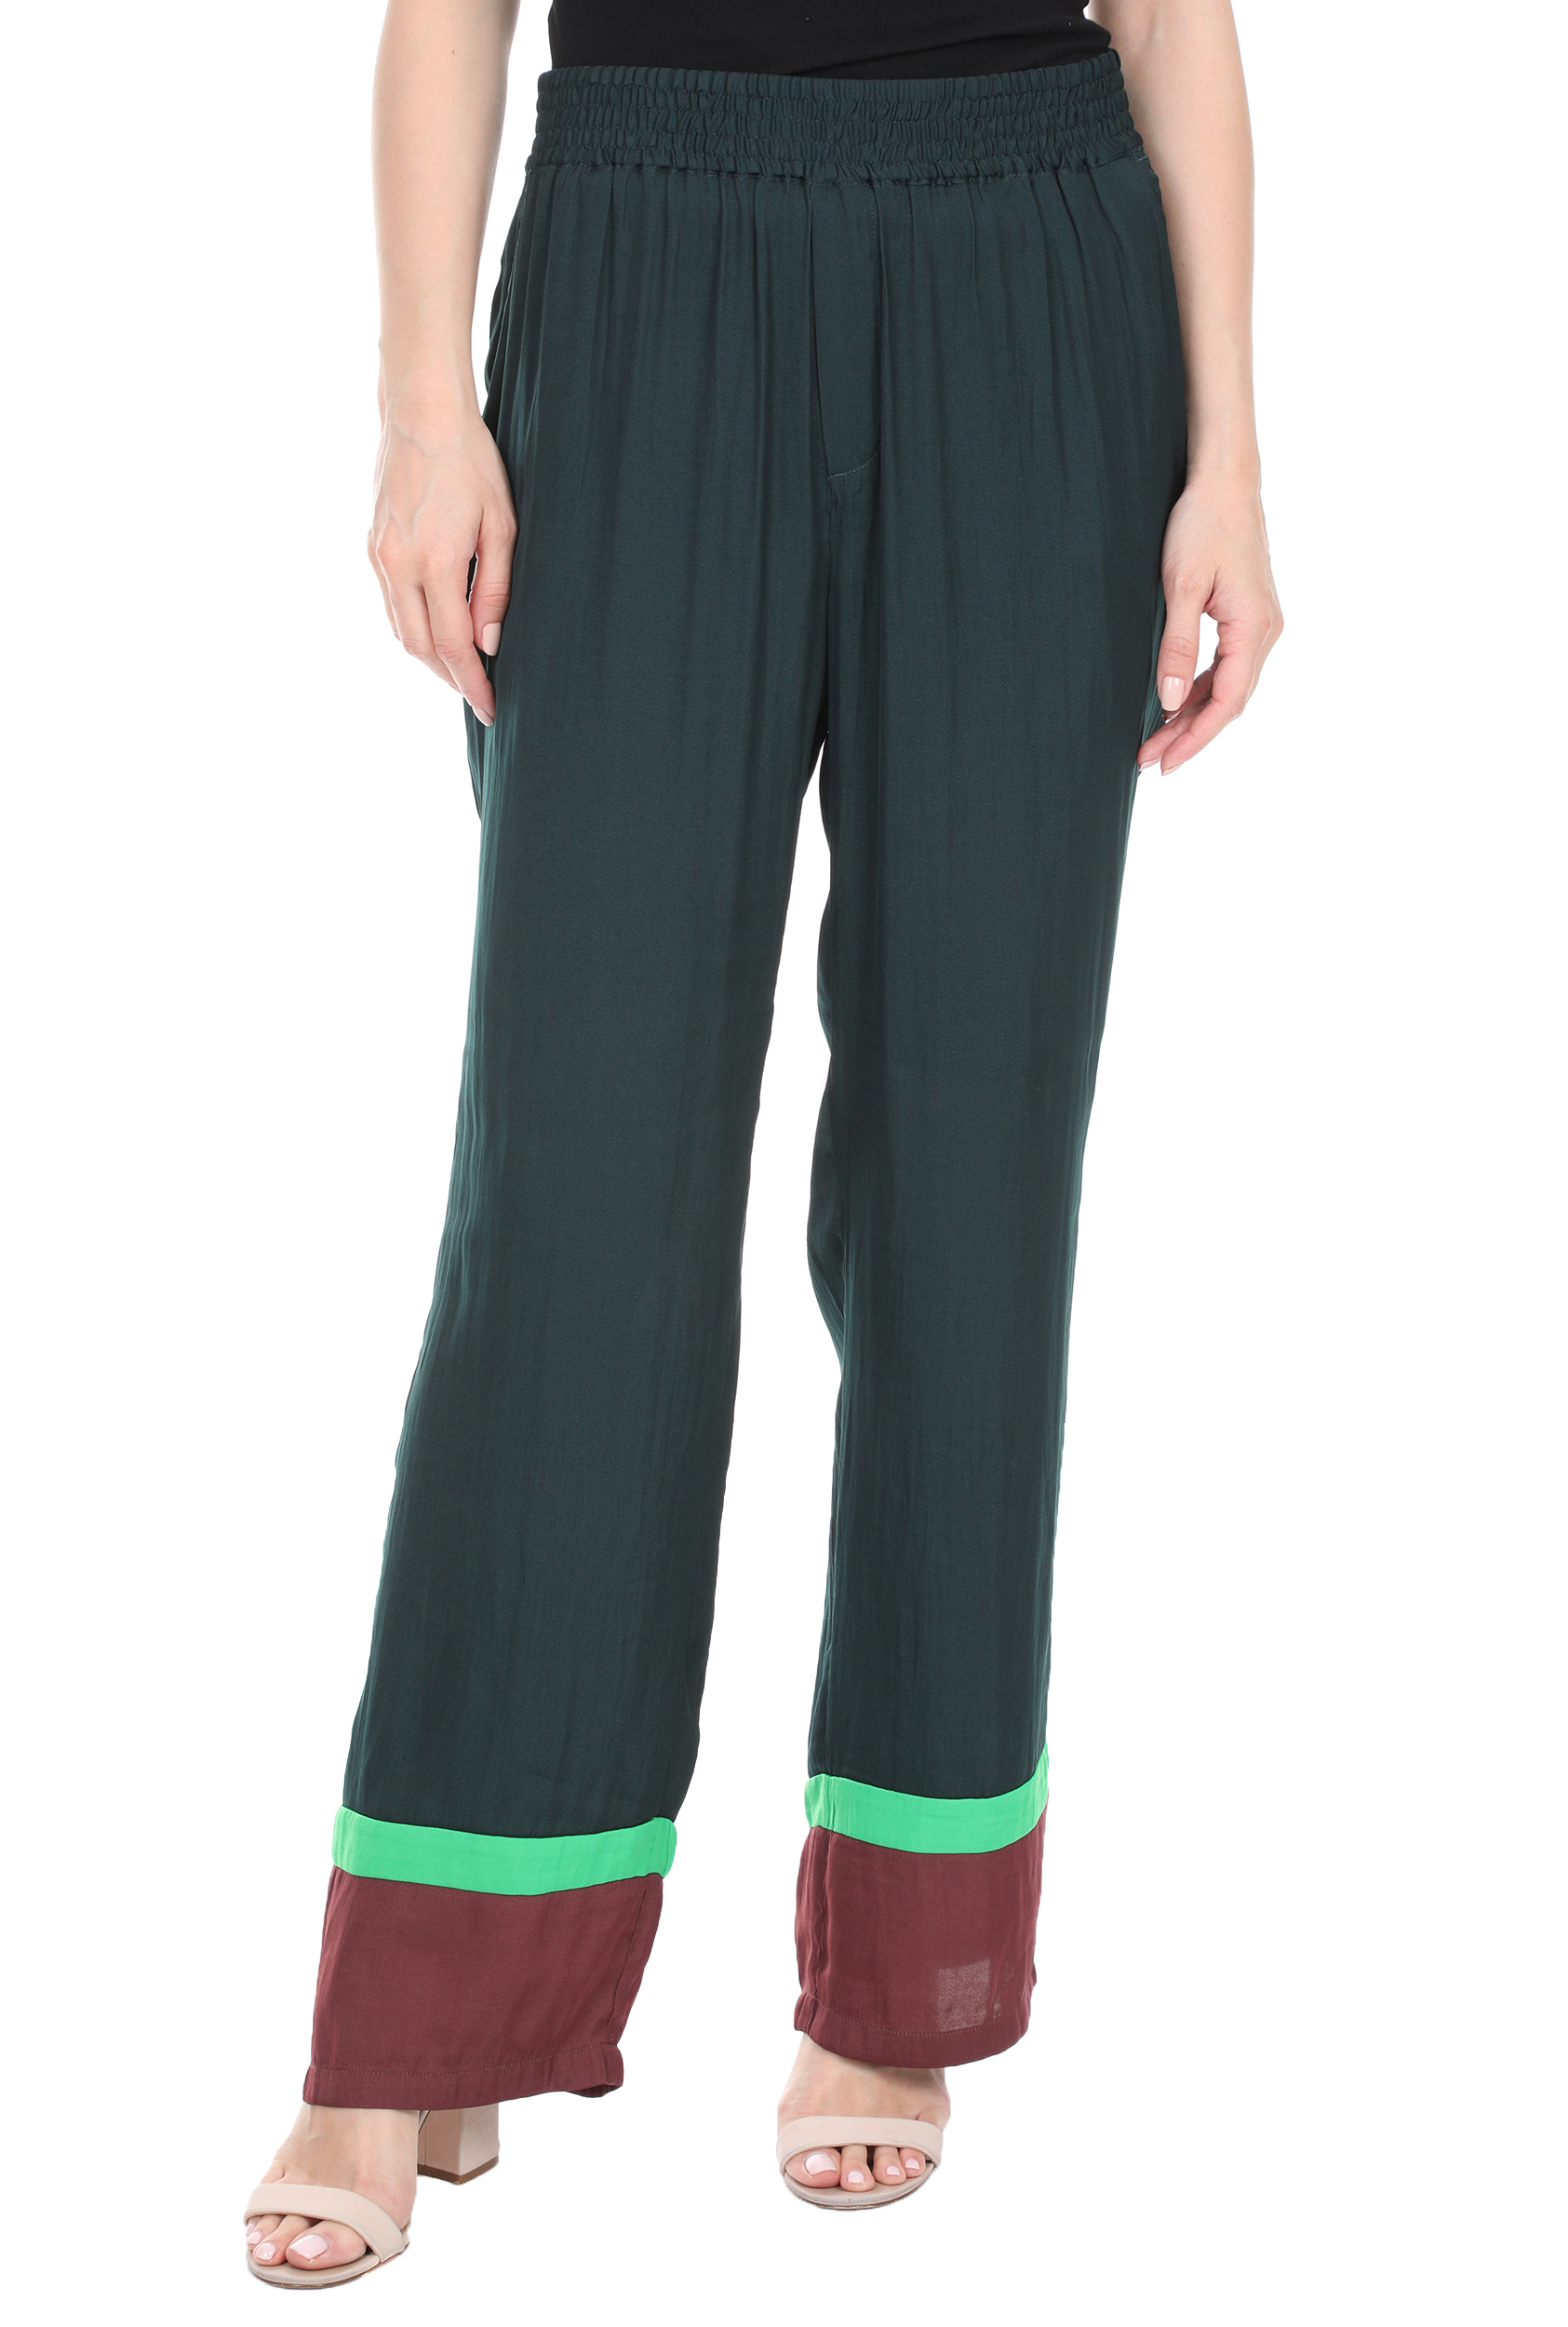 Γυναικεία/Ρούχα/Παντελόνια/Παντελόνες SCOTCH & SODA - Γυναικεία παντελόνα SCOTCH & SODA πράσινη κόκκινη